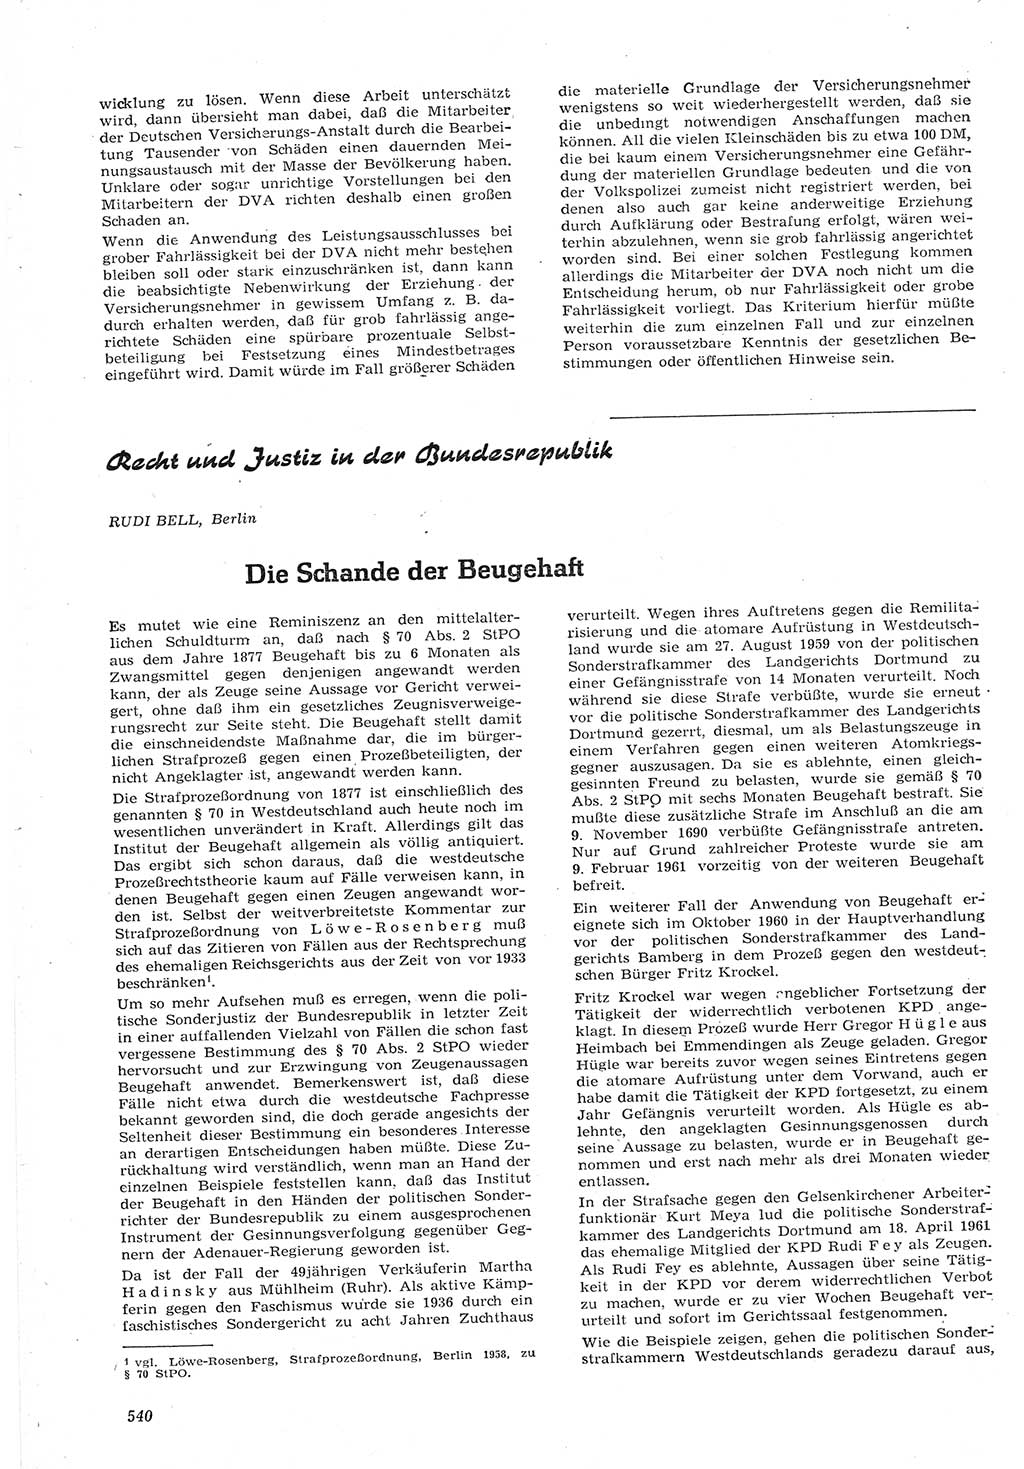 Neue Justiz (NJ), Zeitschrift für Recht und Rechtswissenschaft [Deutsche Demokratische Republik (DDR)], 15. Jahrgang 1961, Seite 540 (NJ DDR 1961, S. 540)